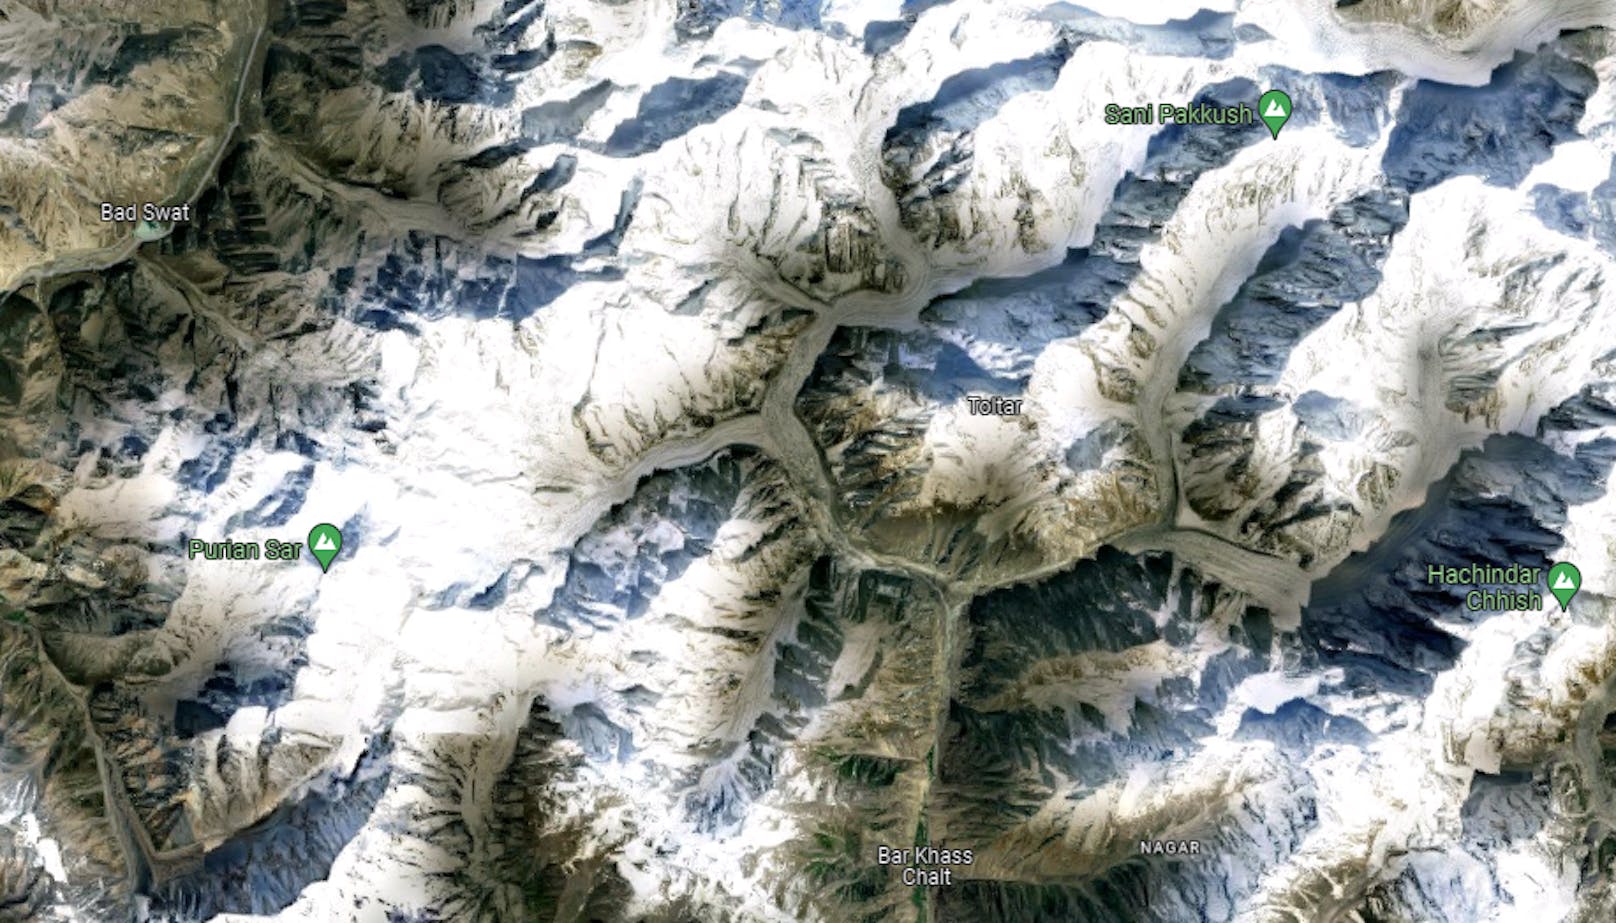 Die Tatsache, dass die Berge üblicherweise nach ihren Erstbesteigern benannt werden, zieht ehrgeizige Extremsportler an.